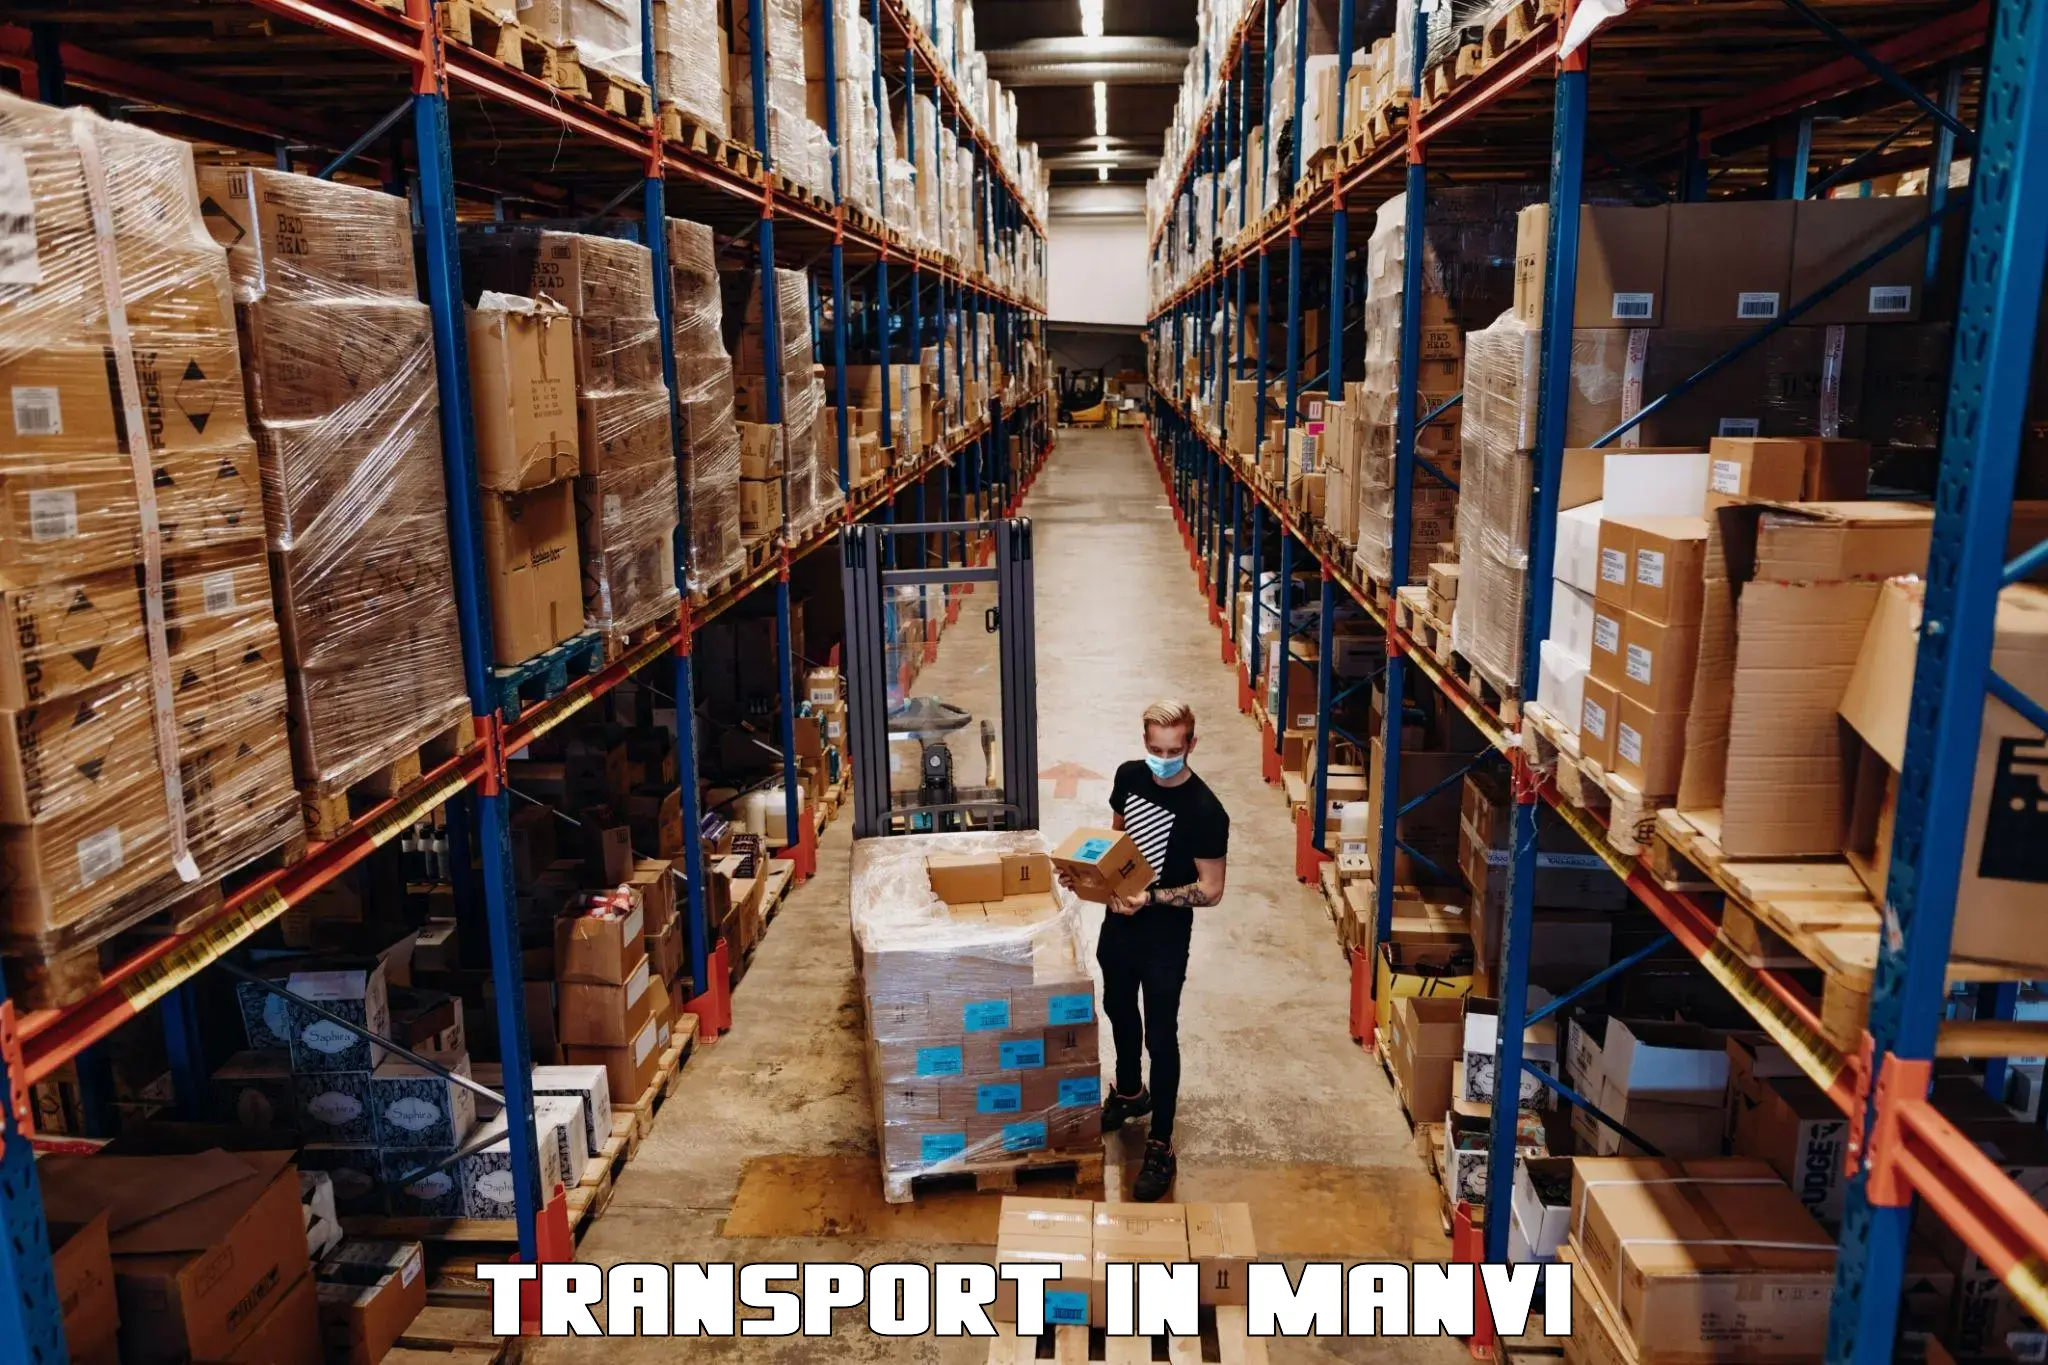 Furniture transport service in Manvi